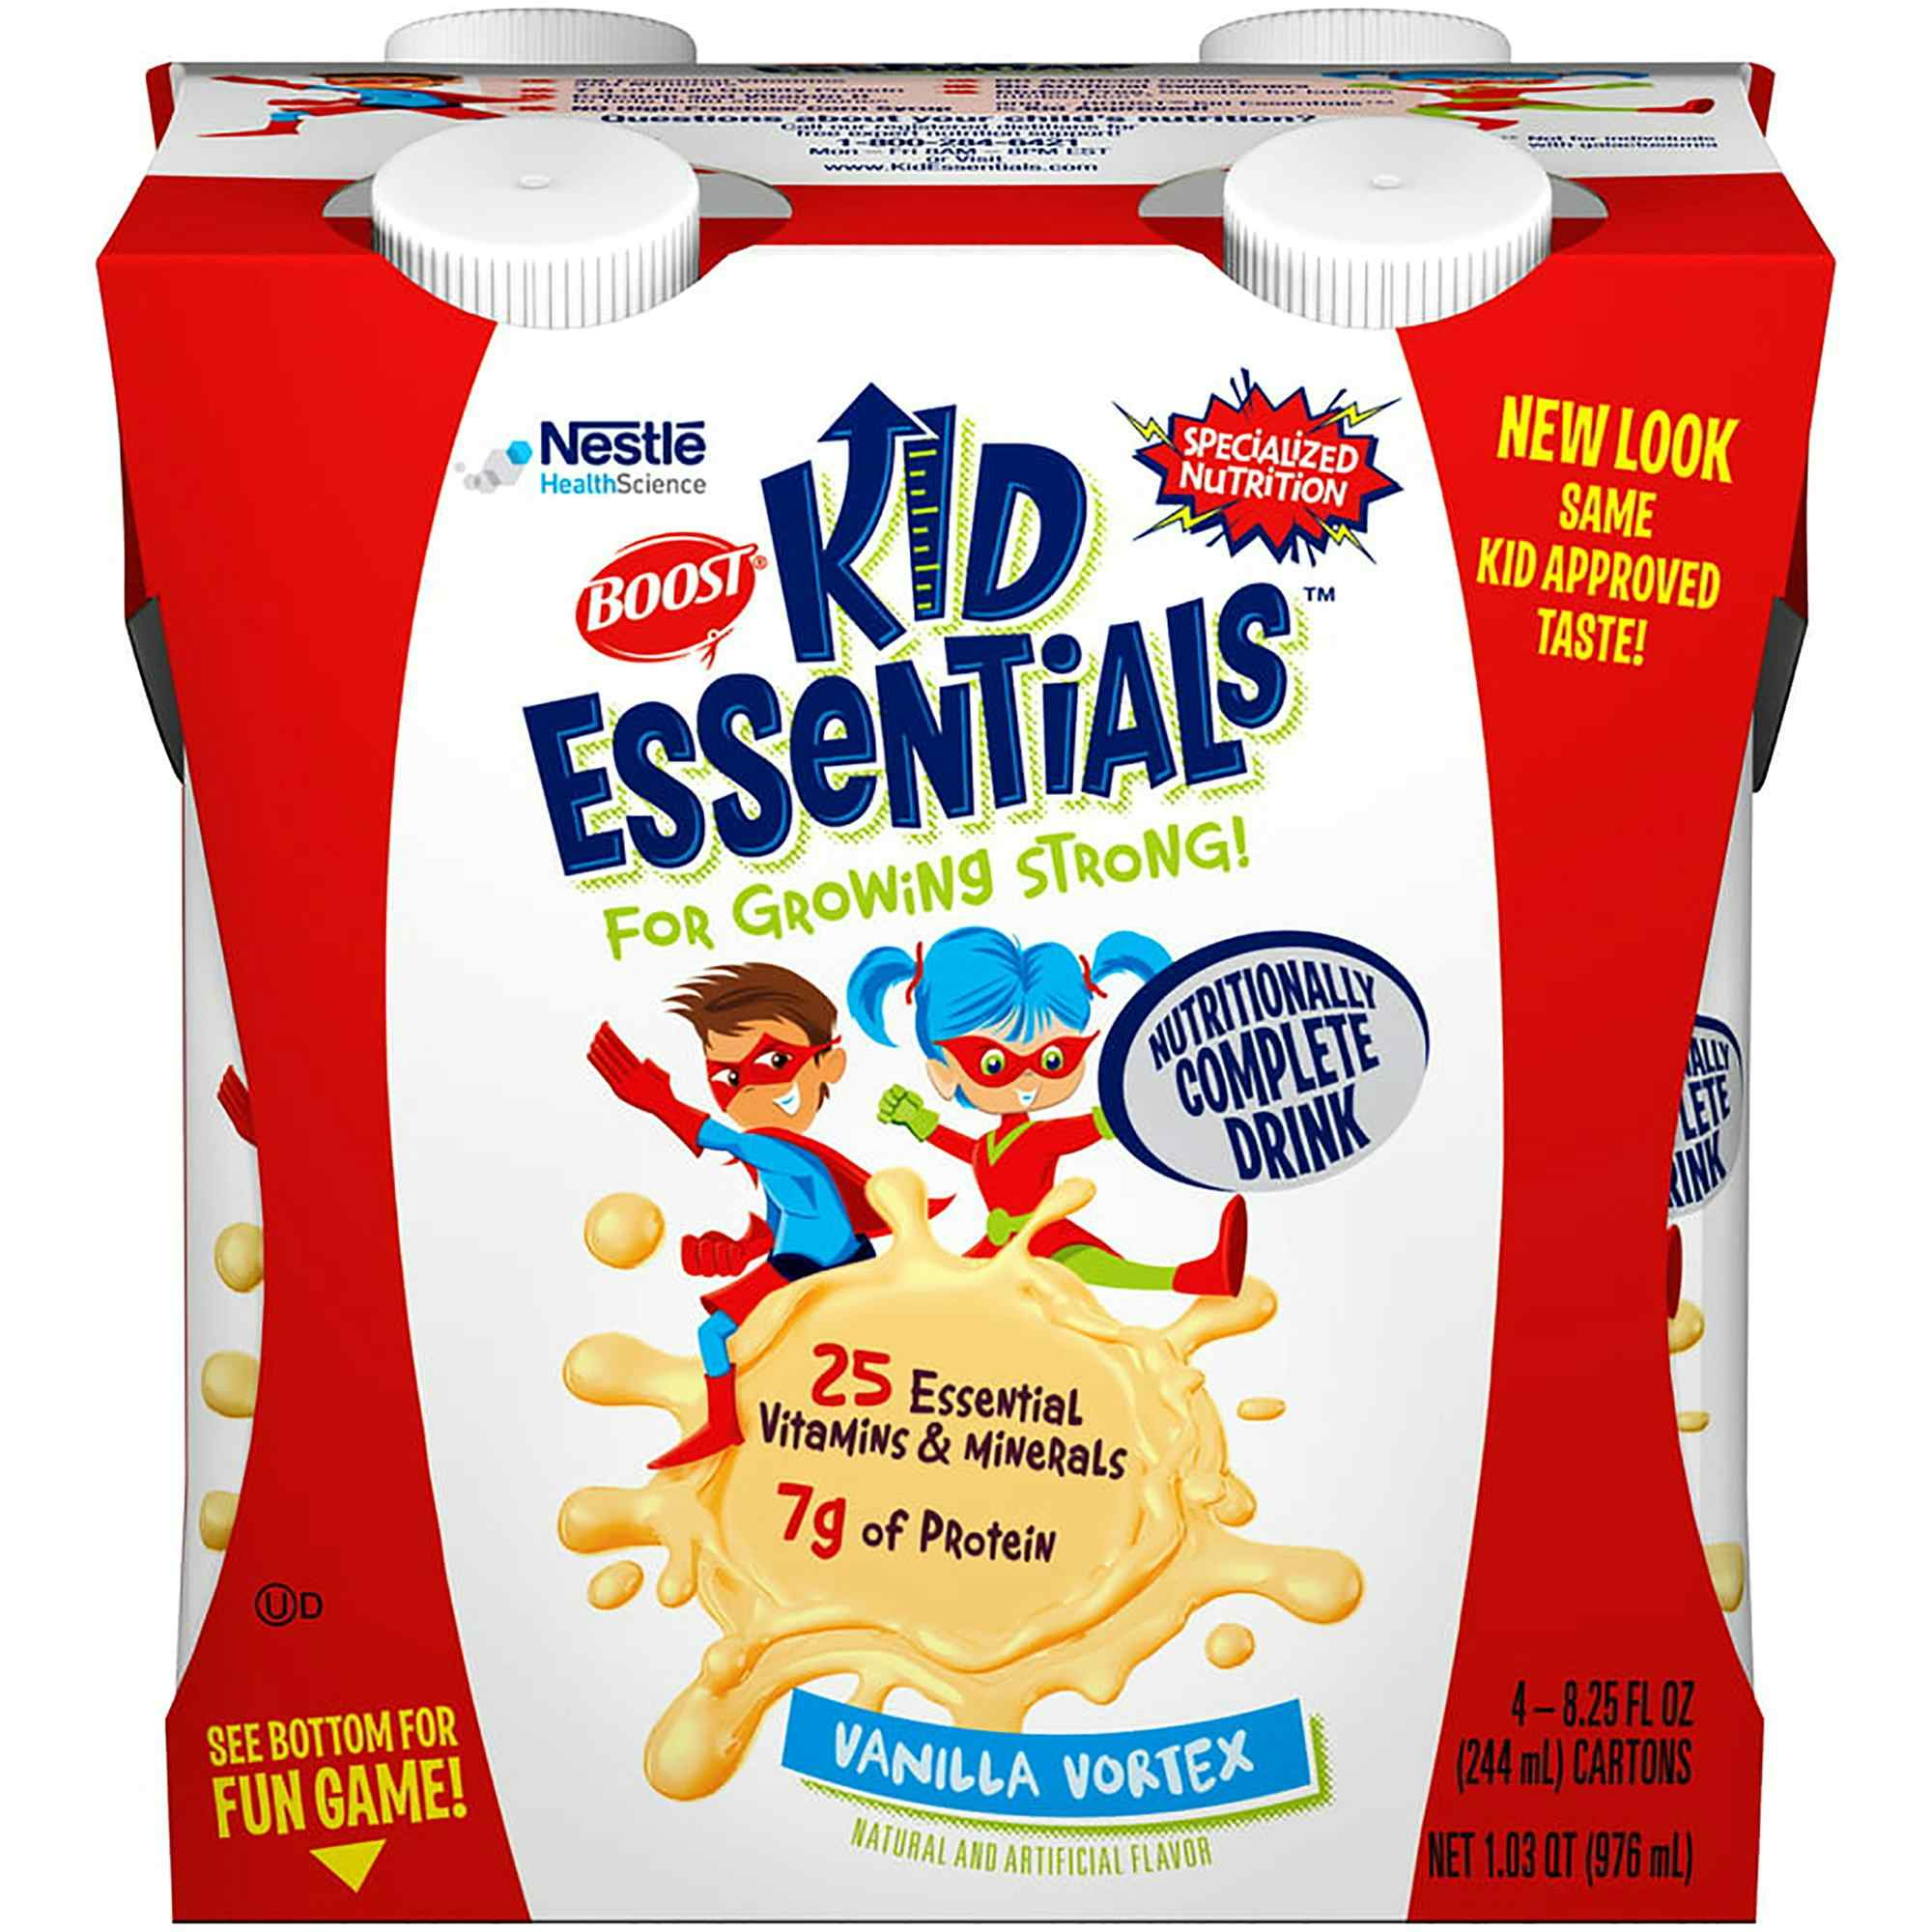 Boost Kid Essentials Nutritionally Complete Drink, 8.25 oz., Vanilla Vortex, 12251151, Case of 16